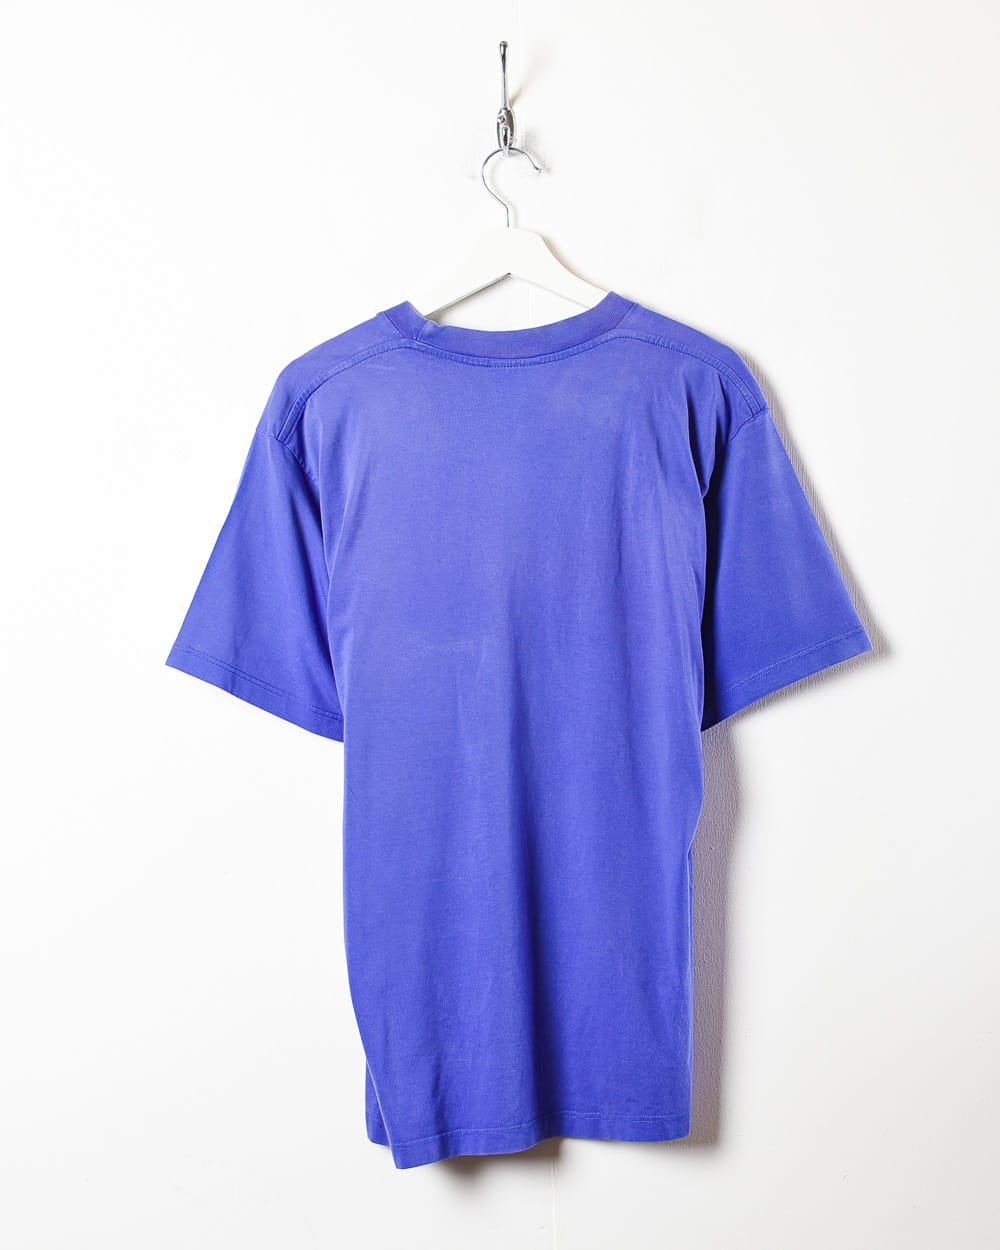 Blue Nike T-Shirt - Medium